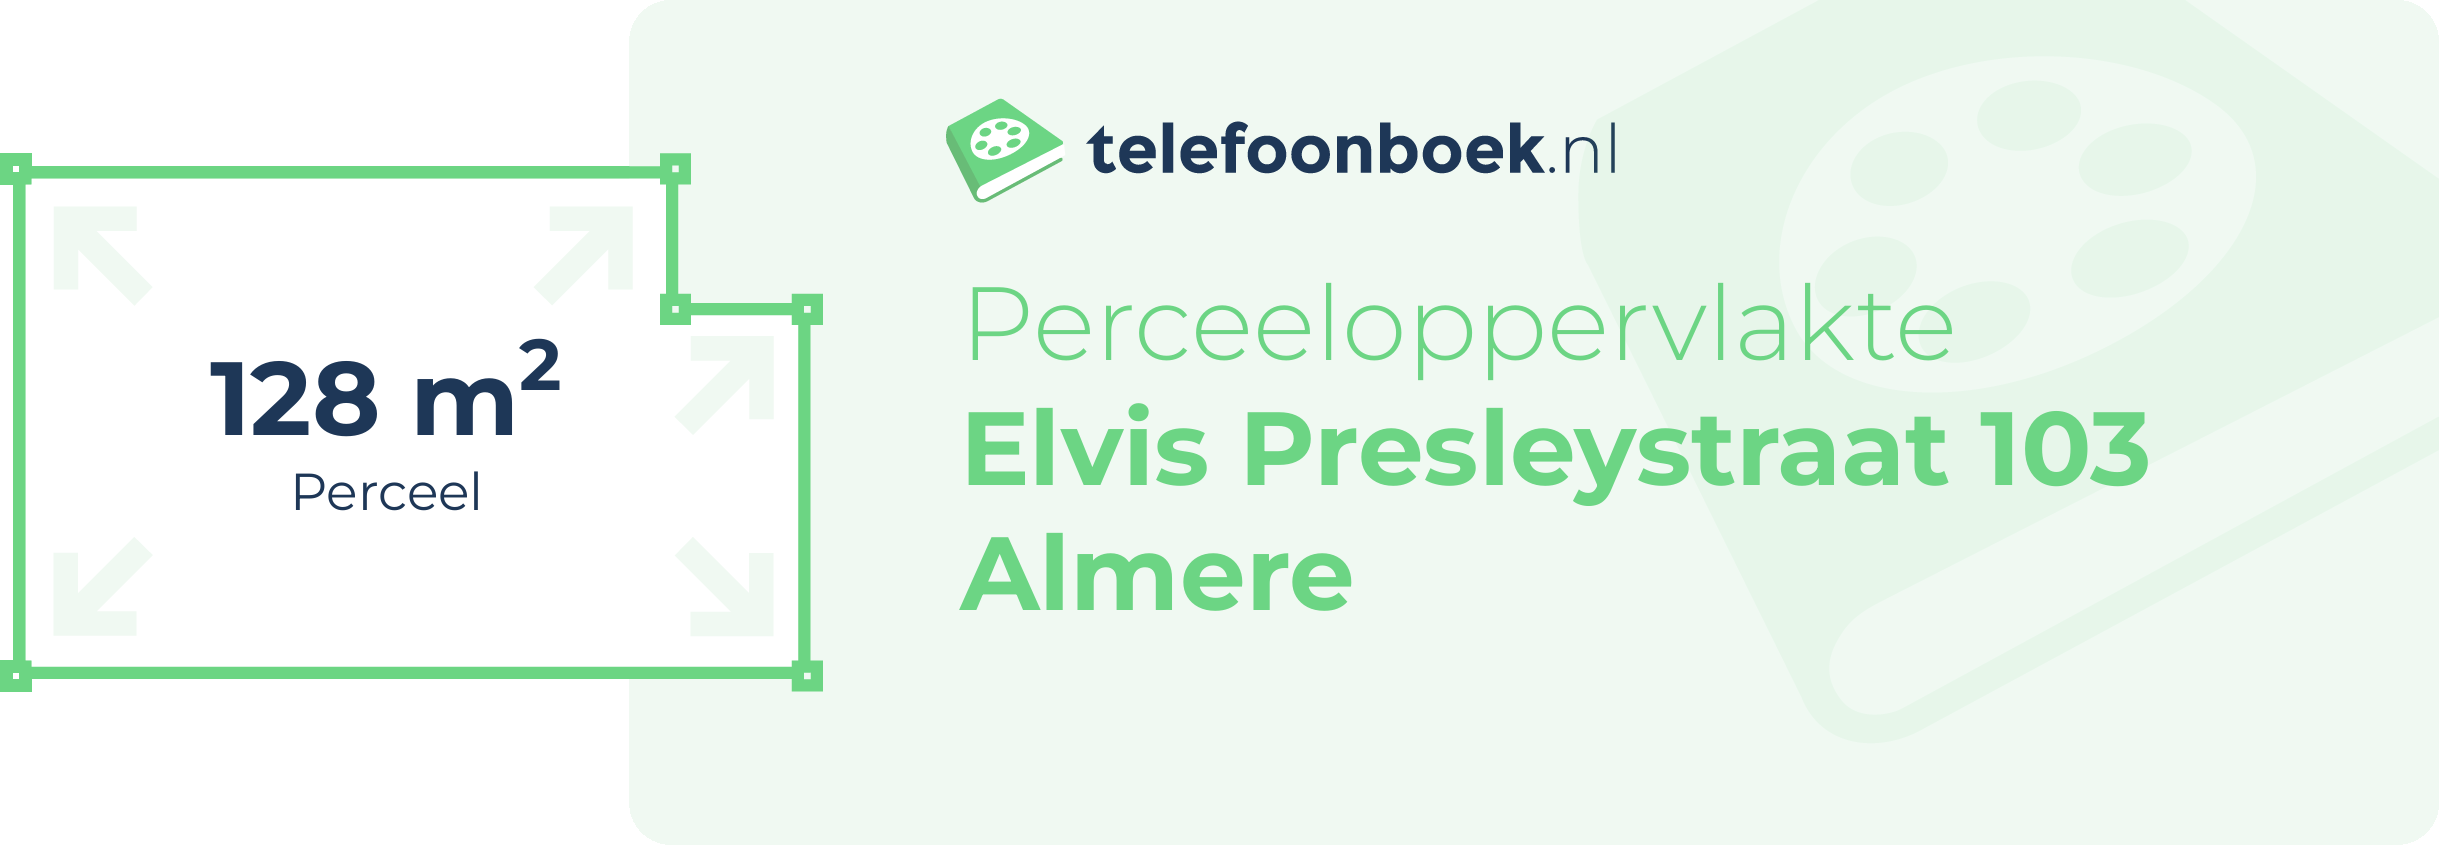 Perceeloppervlakte Elvis Presleystraat 103 Almere